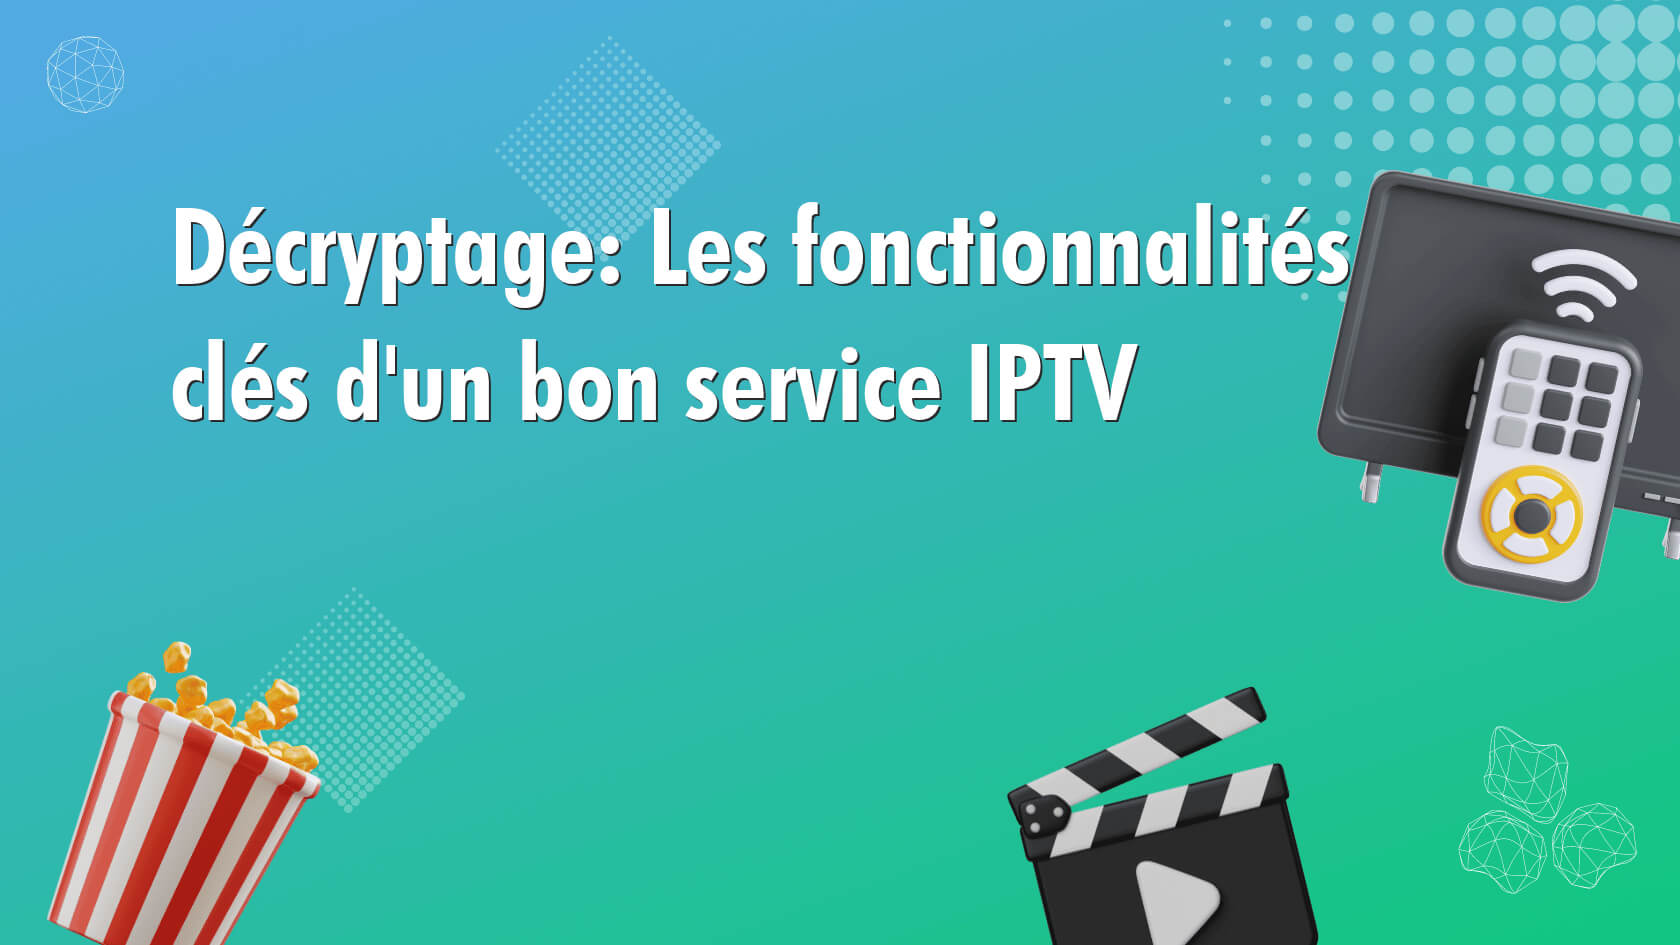 Décryptage: Les fonctionnalités clés d’un bon service IPTV